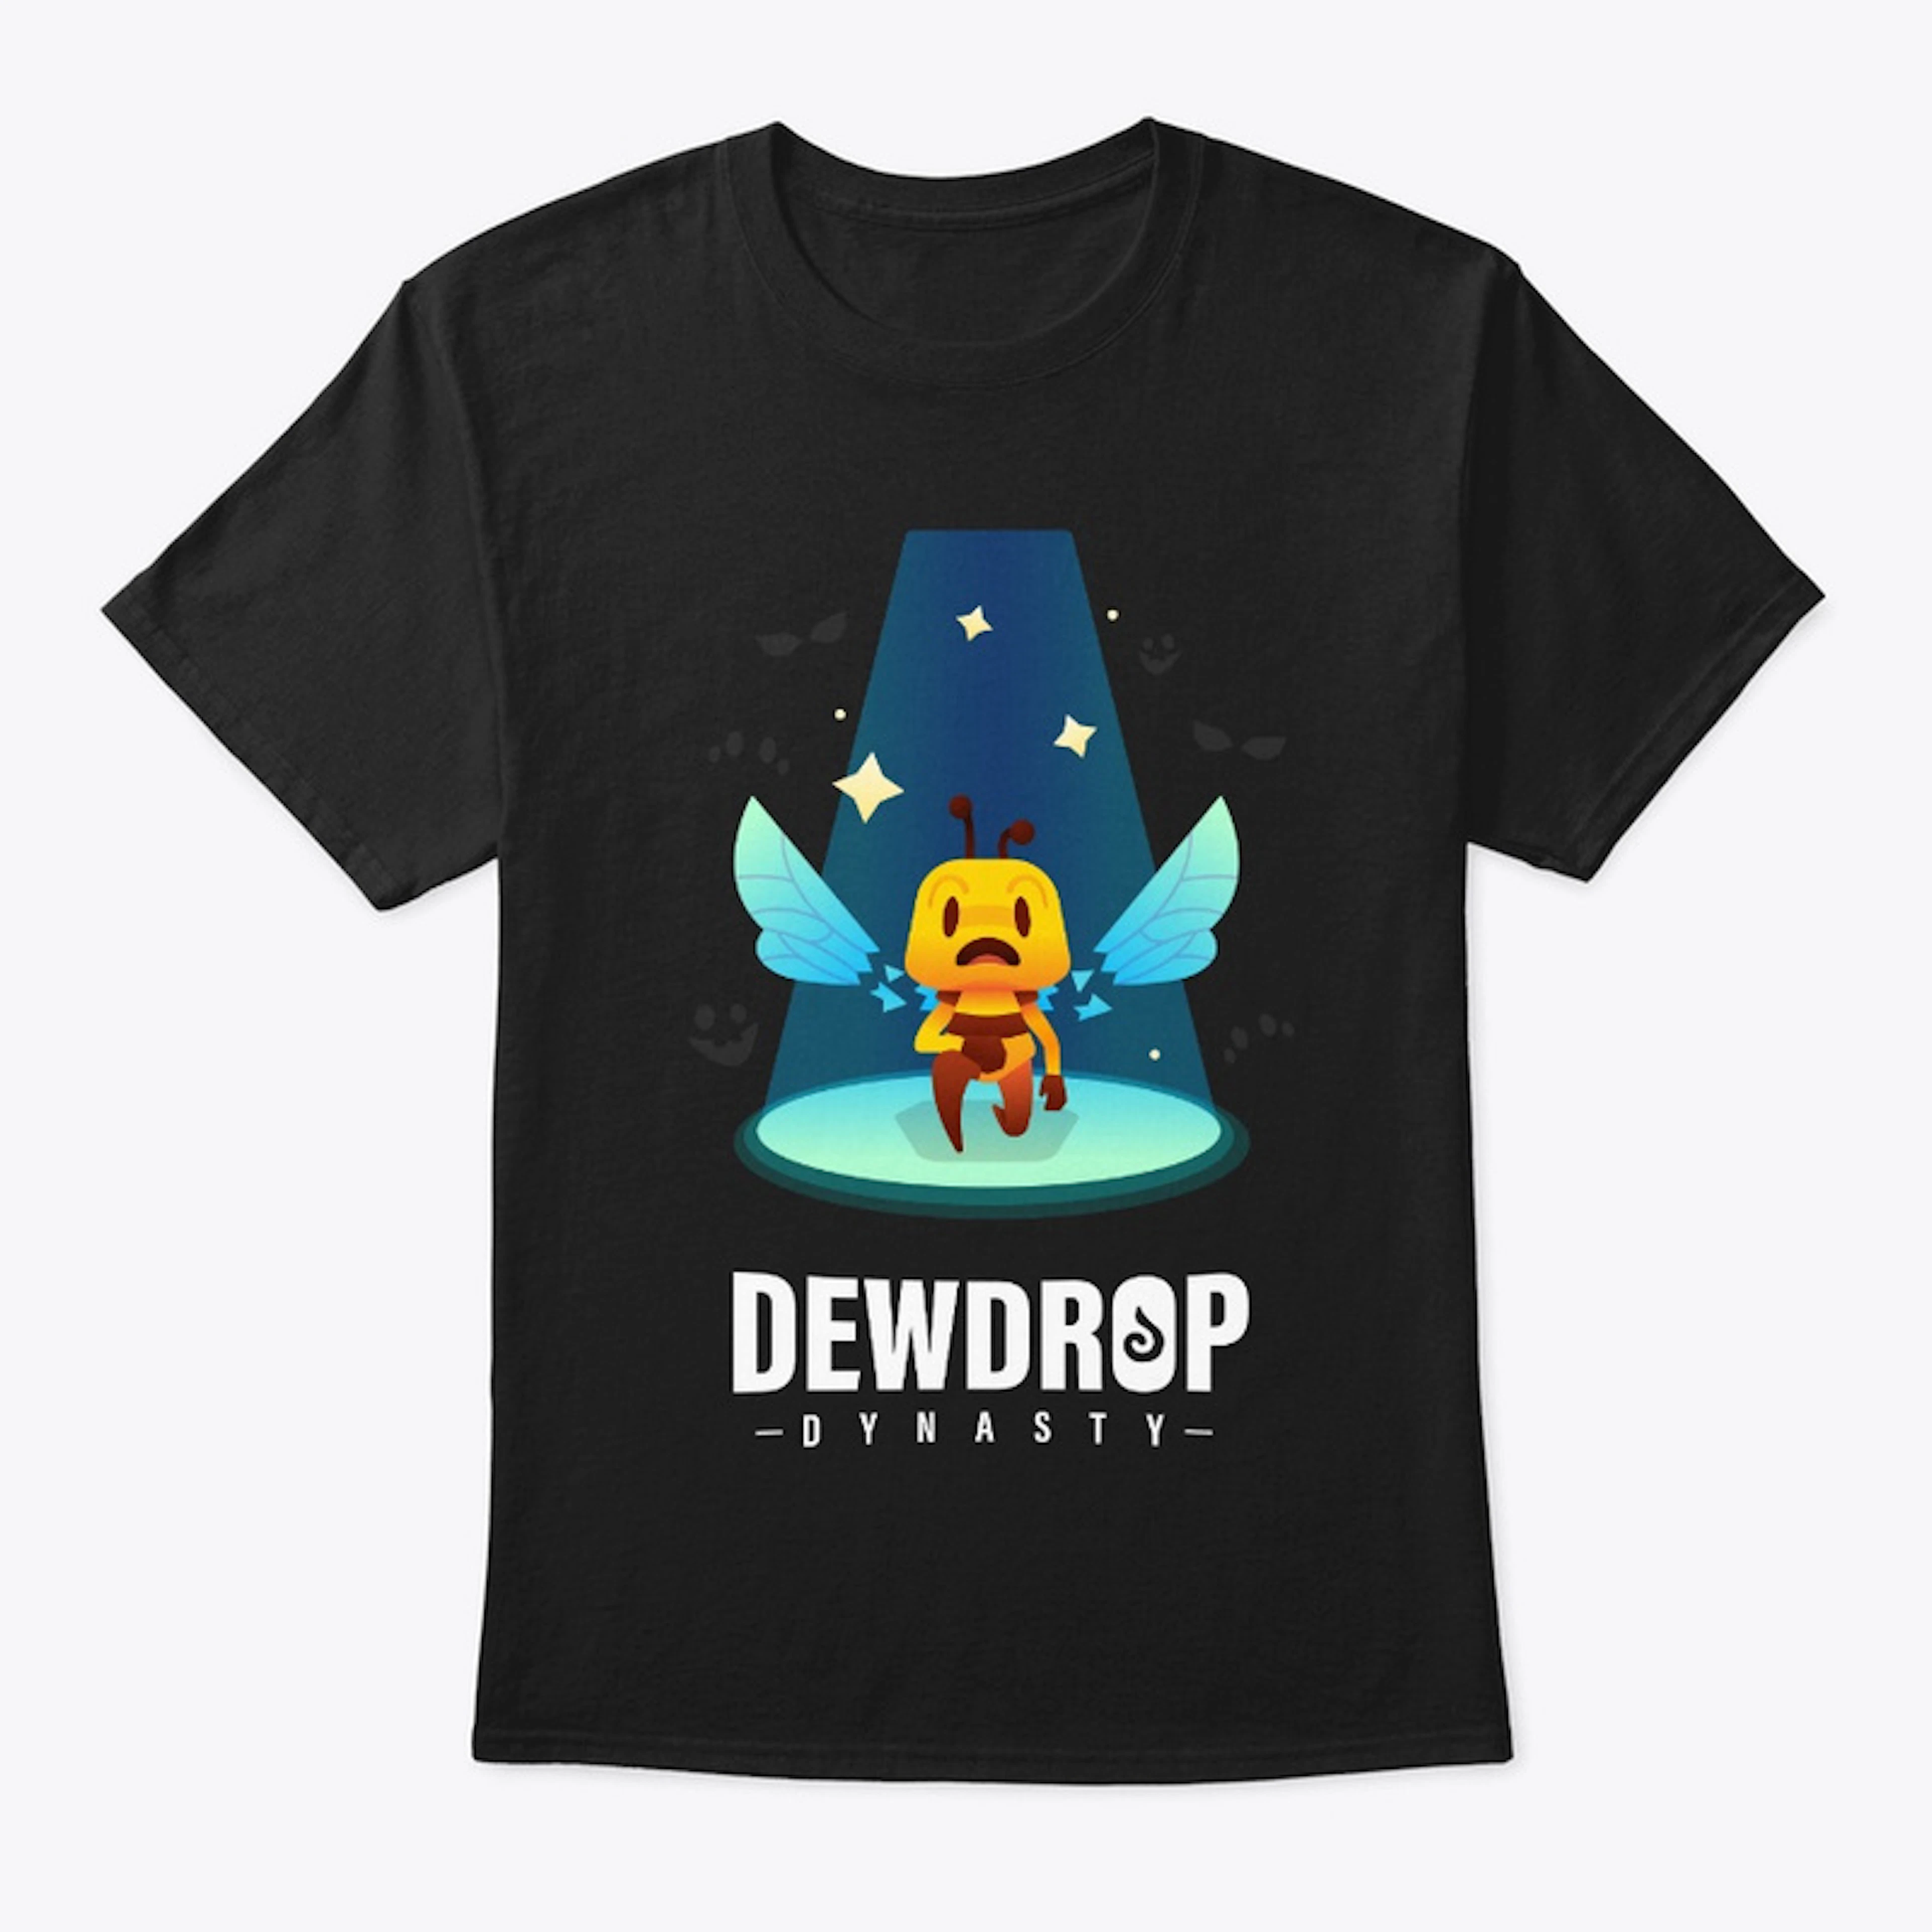 Dewdrop Dynasty T-Shirt